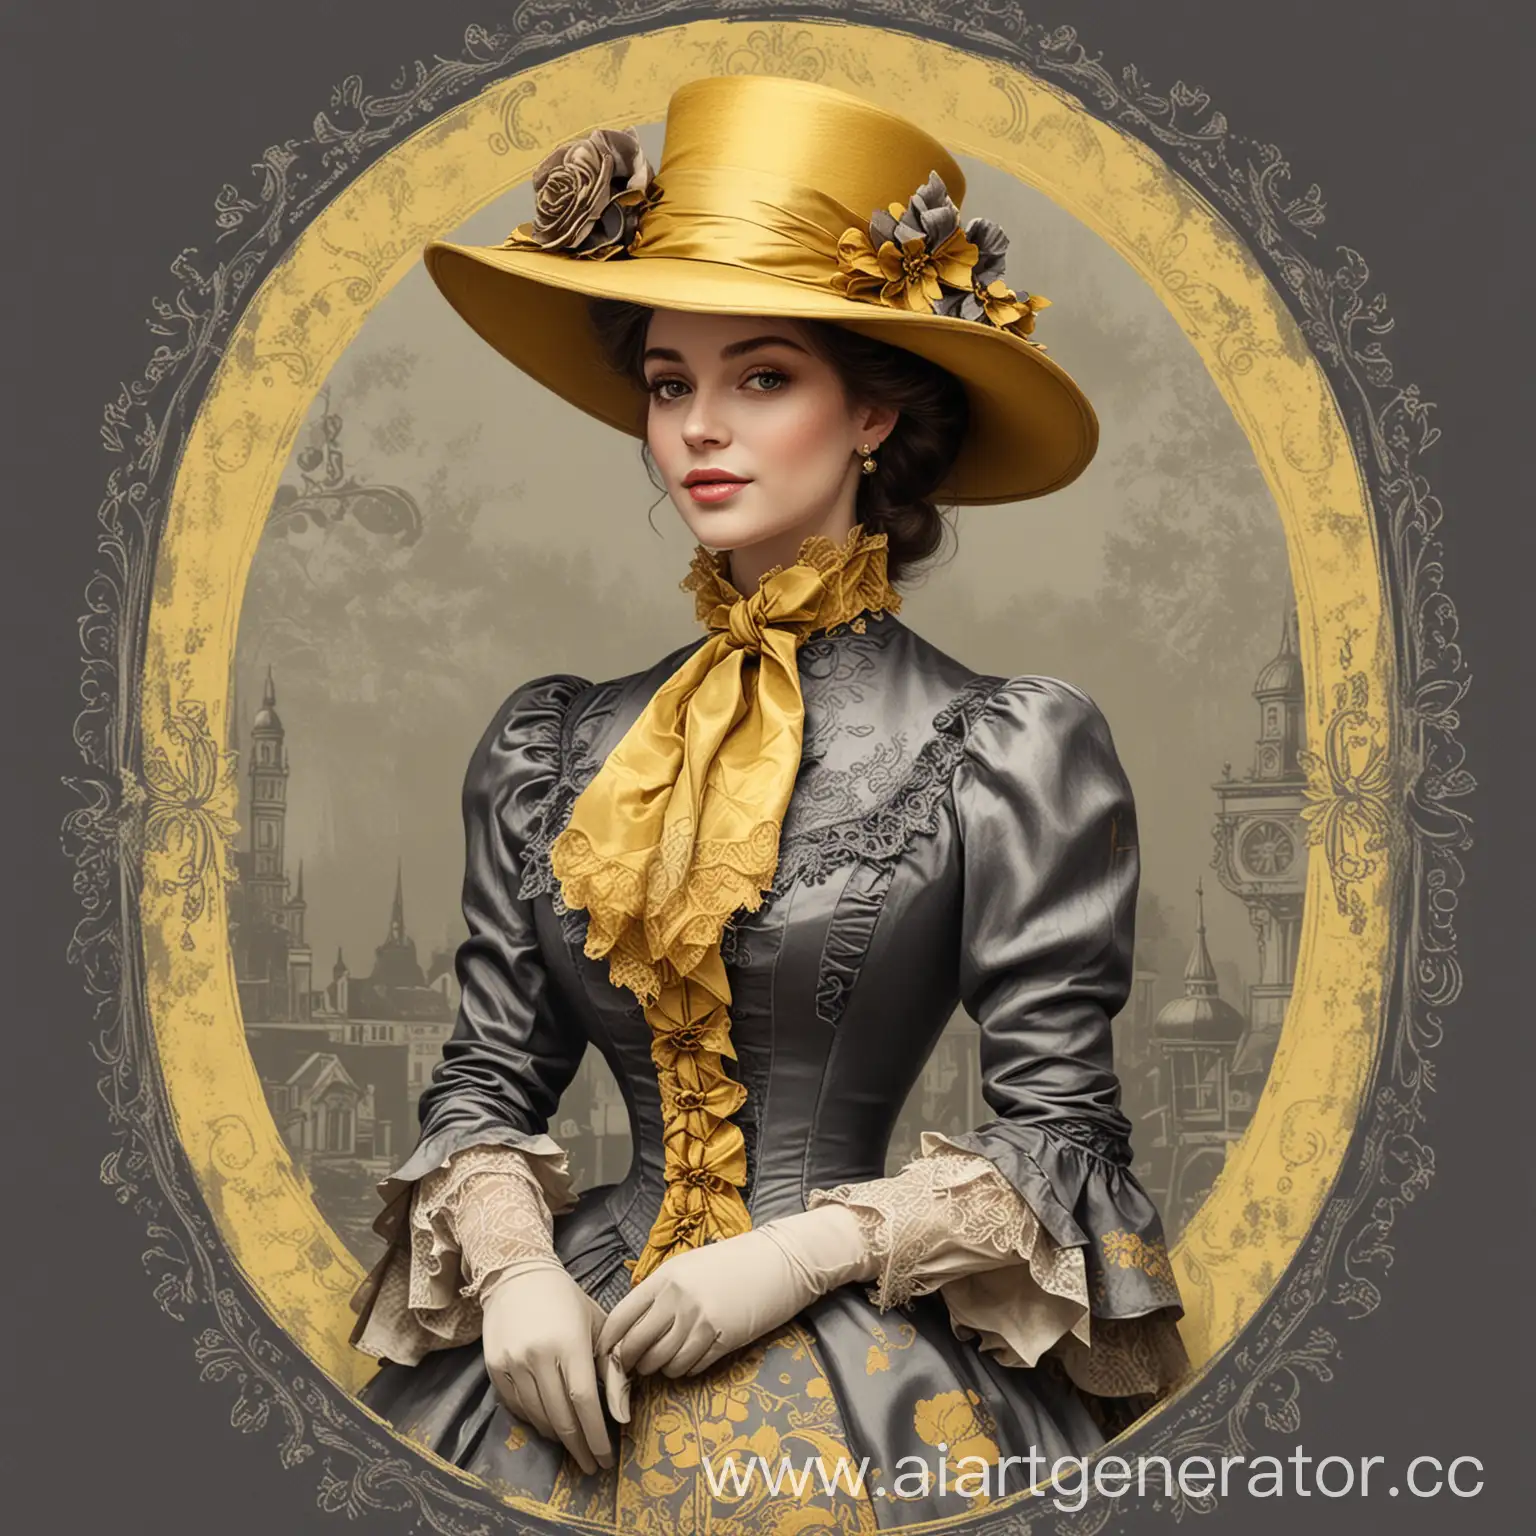 дама в шляпе и одежде викторианского стиля в серо-желтых оттенках для этикетки вина